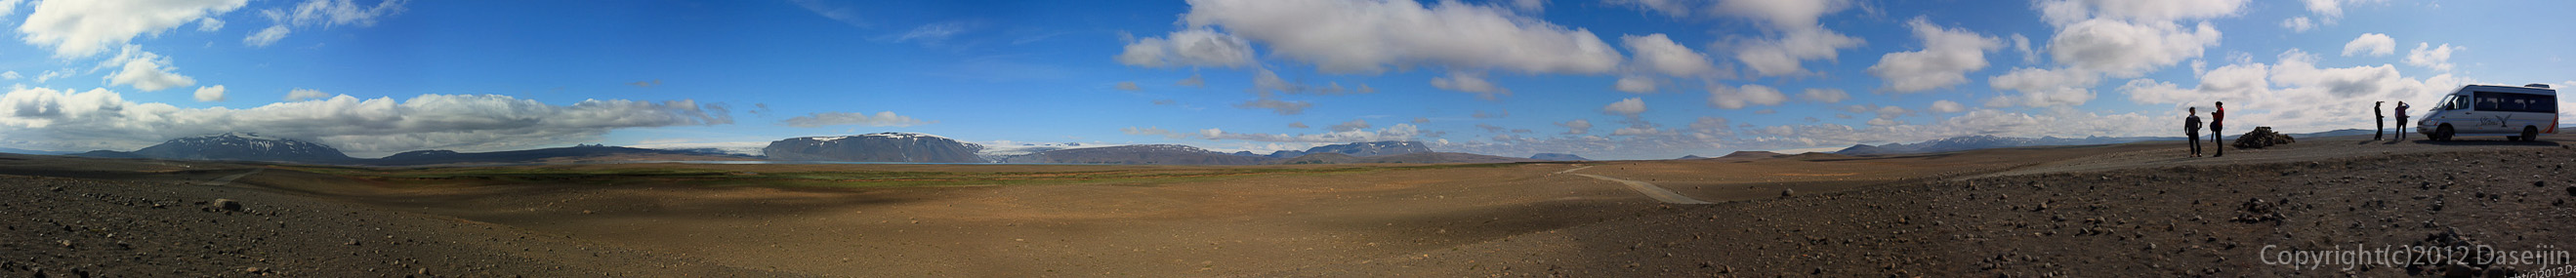 120805アイスランド、グリーンランドの旅・ハイランドパノラマ